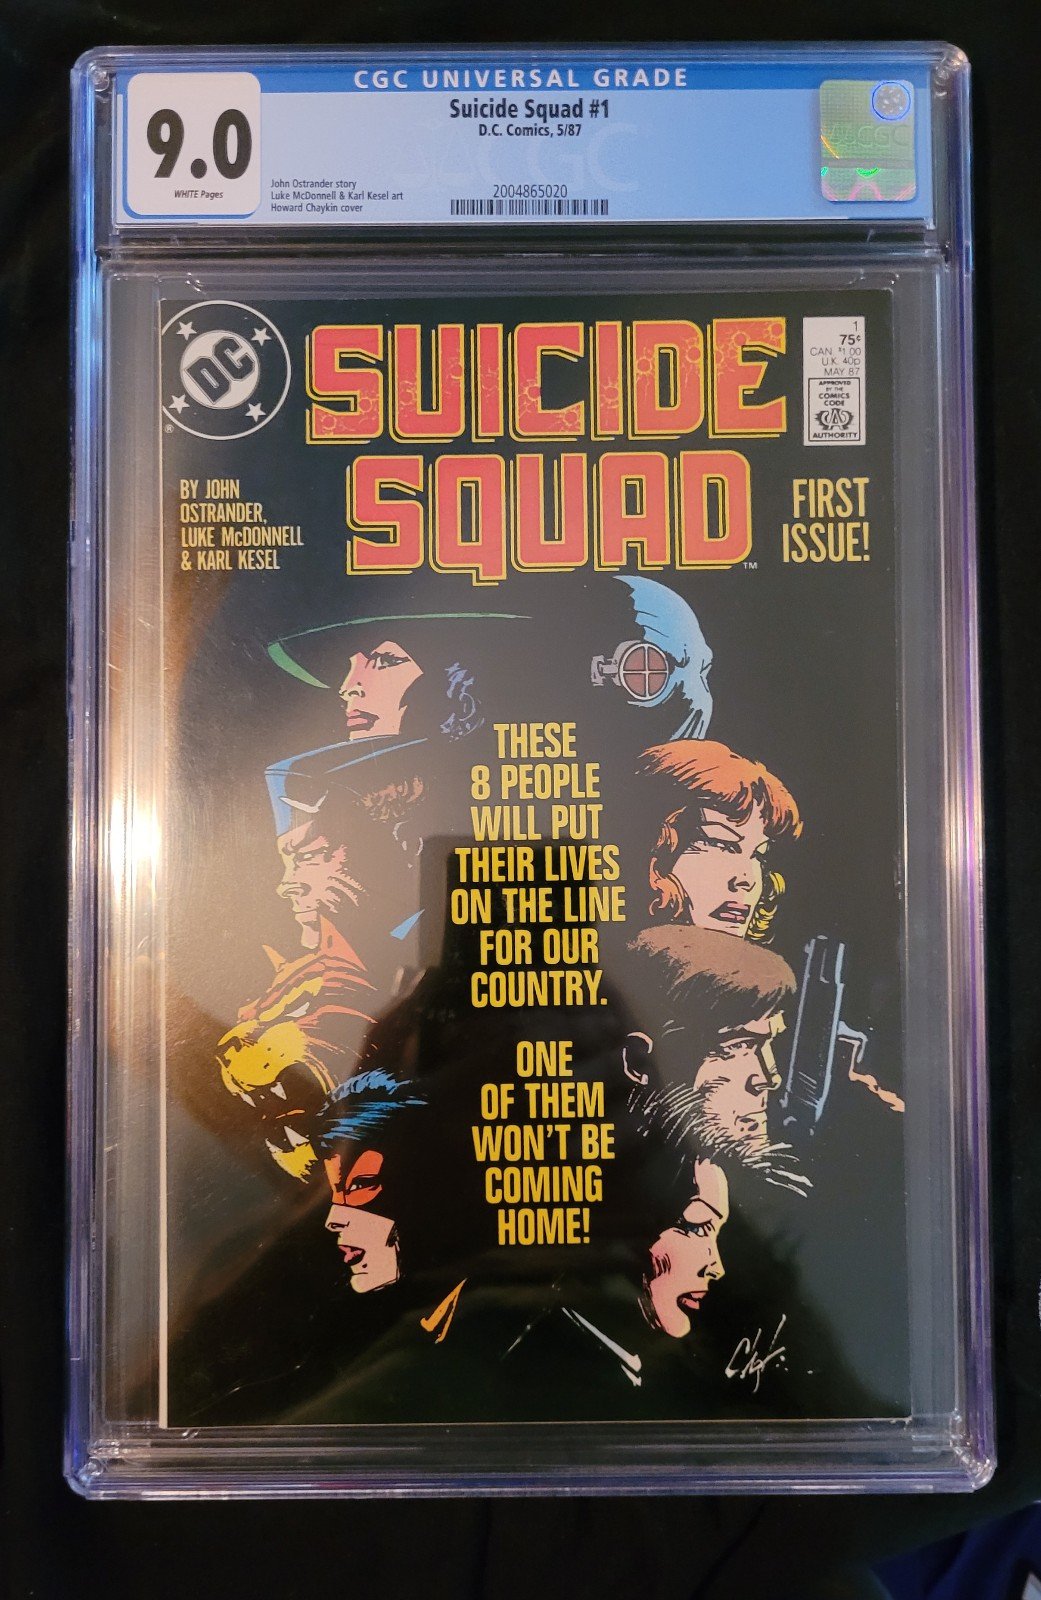 Suicide Squad #1 1987 CGC 9.0 E68mJlEew